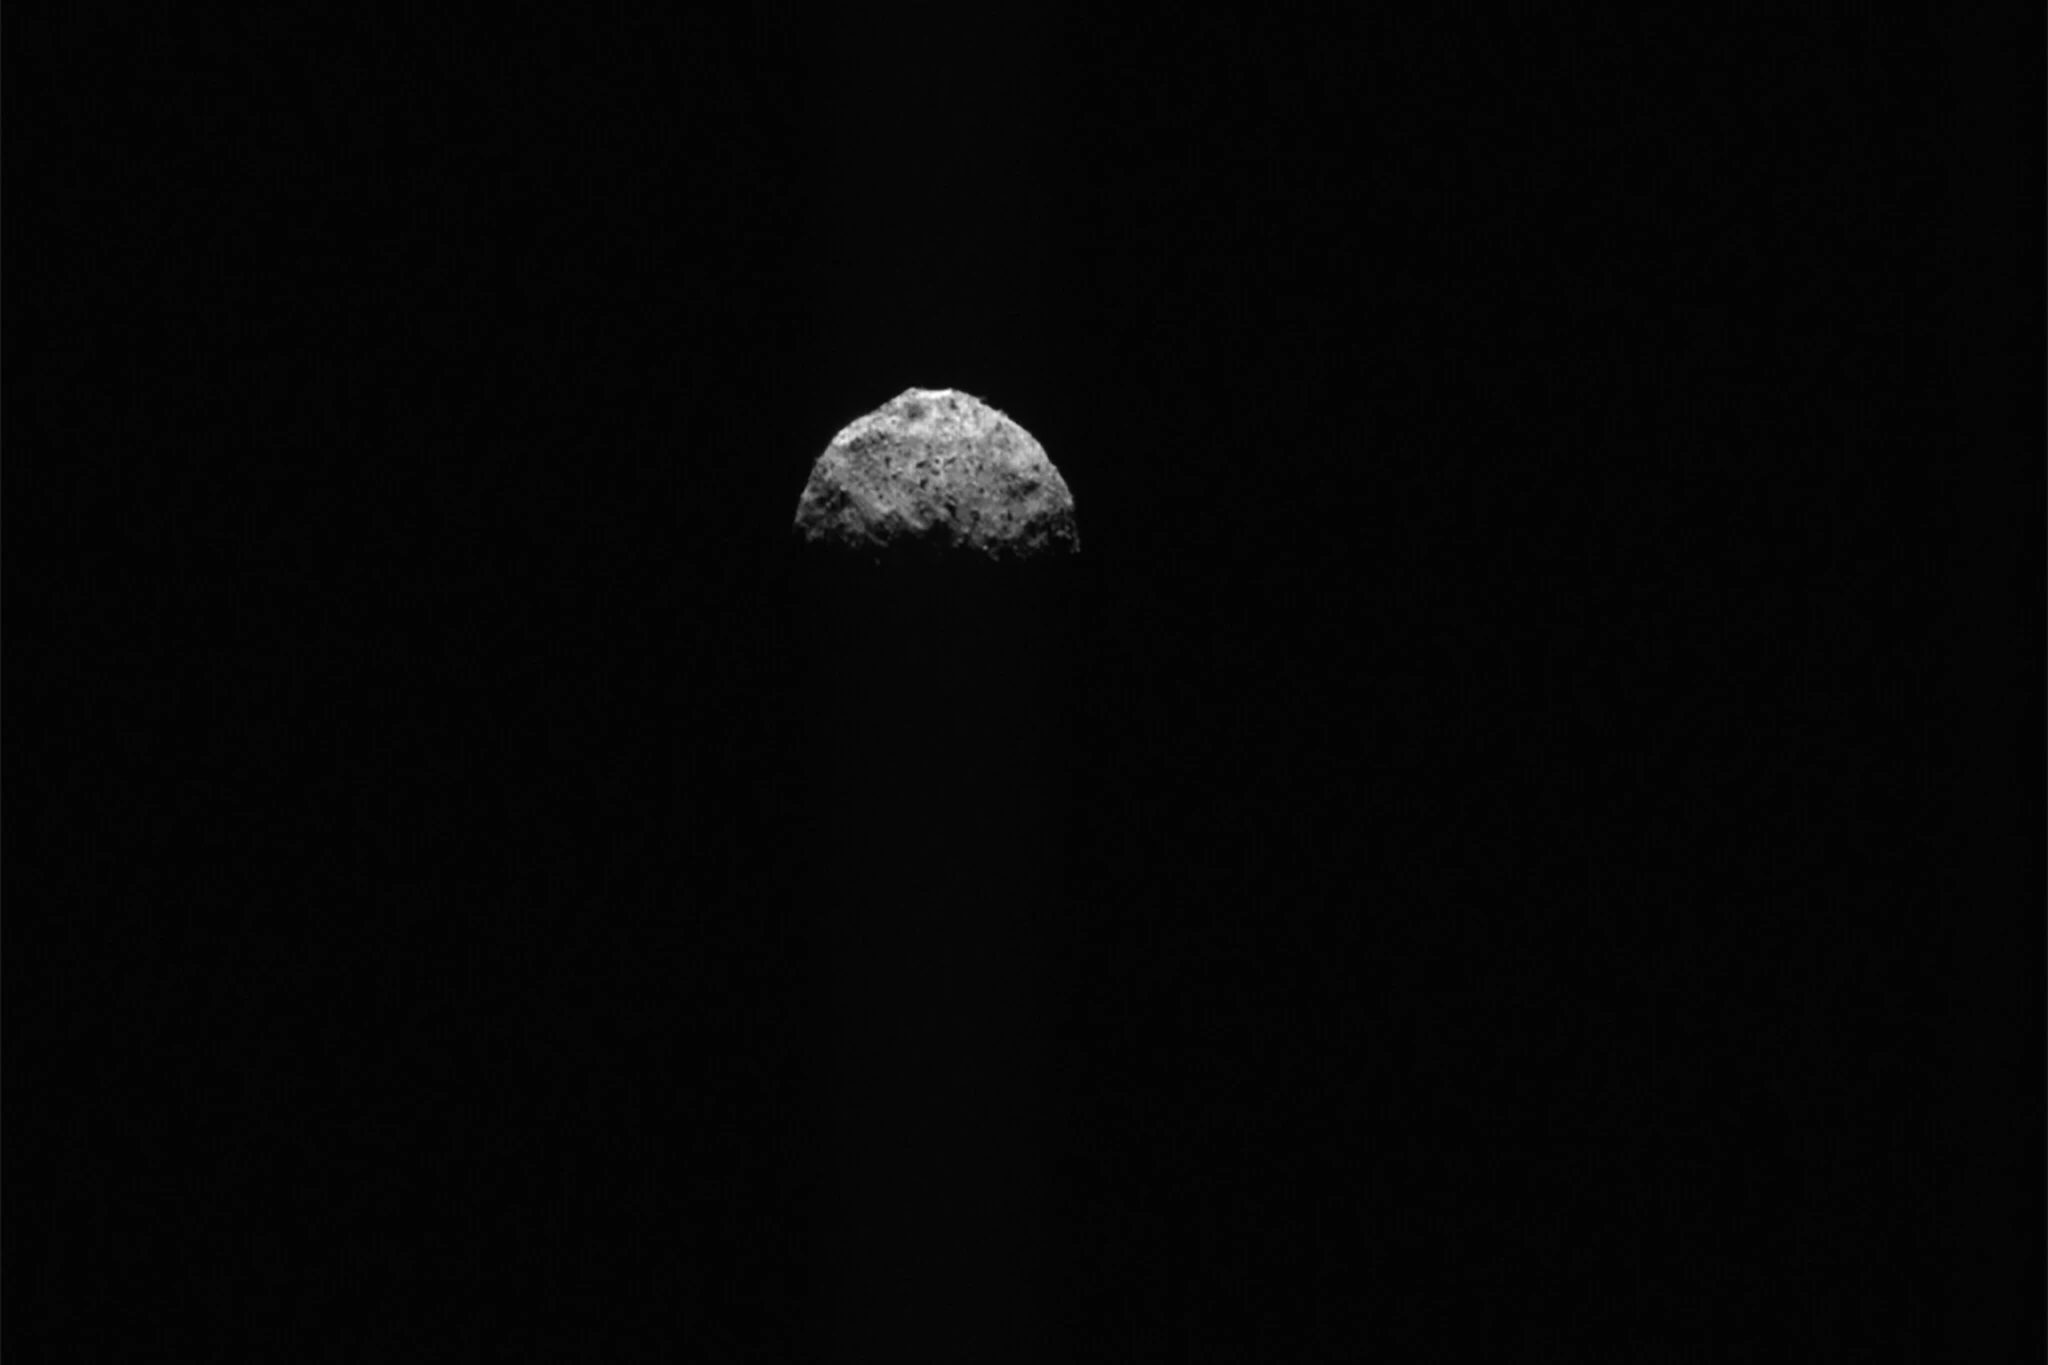 سیارک بنو از نگاه فضاپیمای اسیریس رکس ناسا